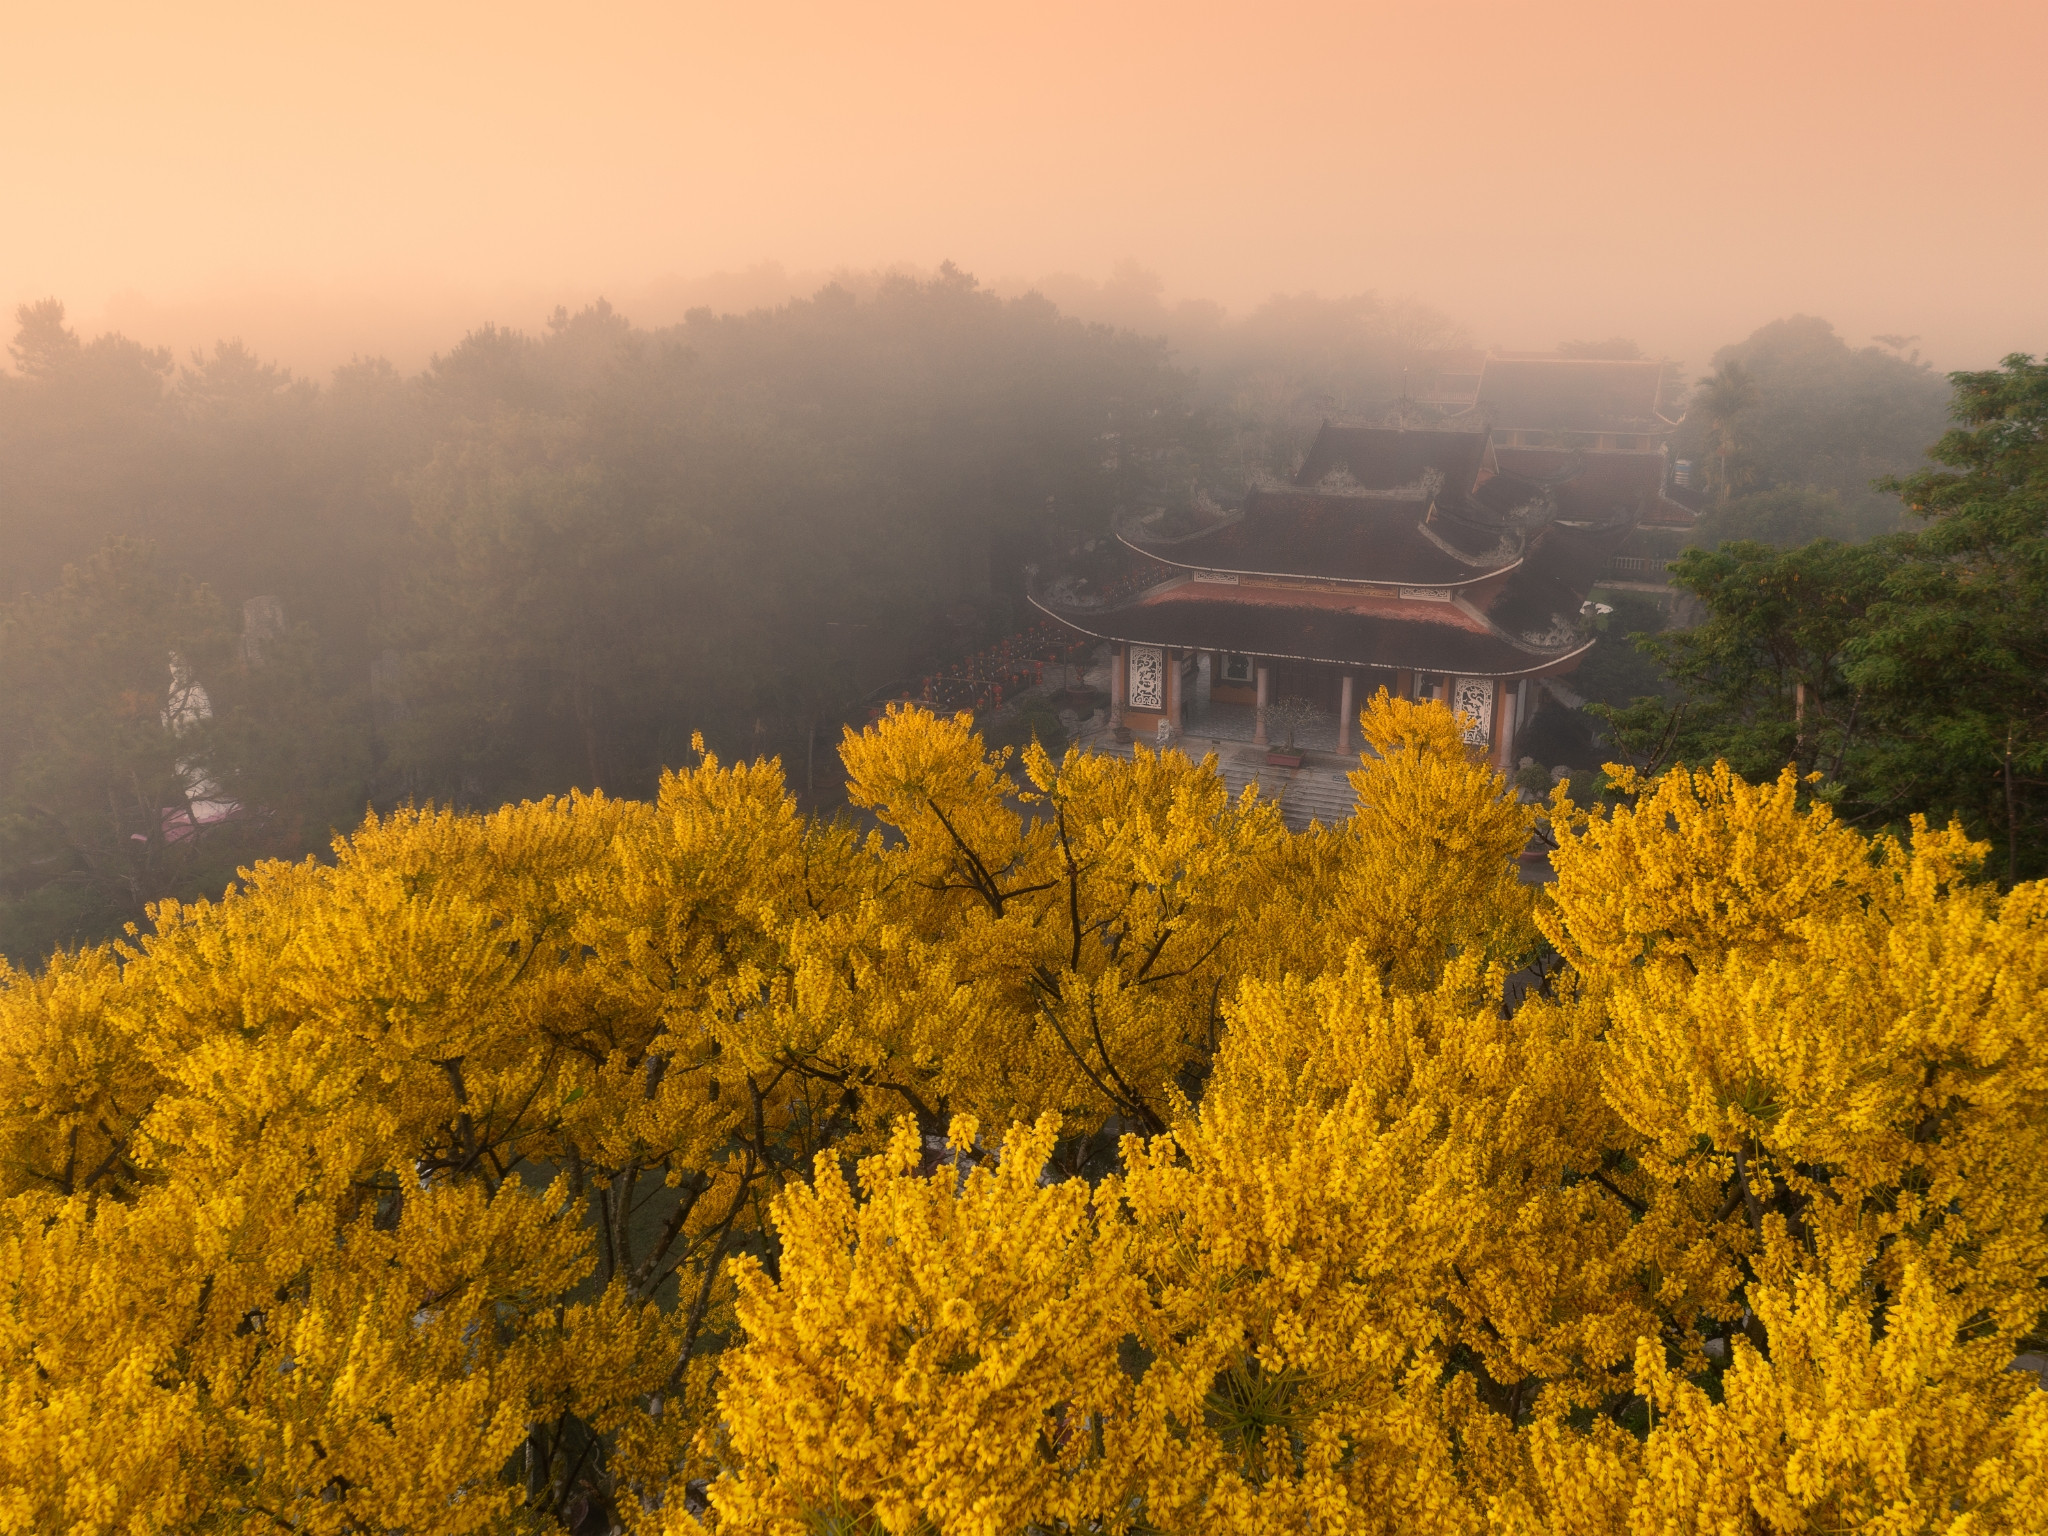 Du xuân, ghé tu viện gần Đà Lạt ngắm mùa phượng vàng đẹp như những thước phim